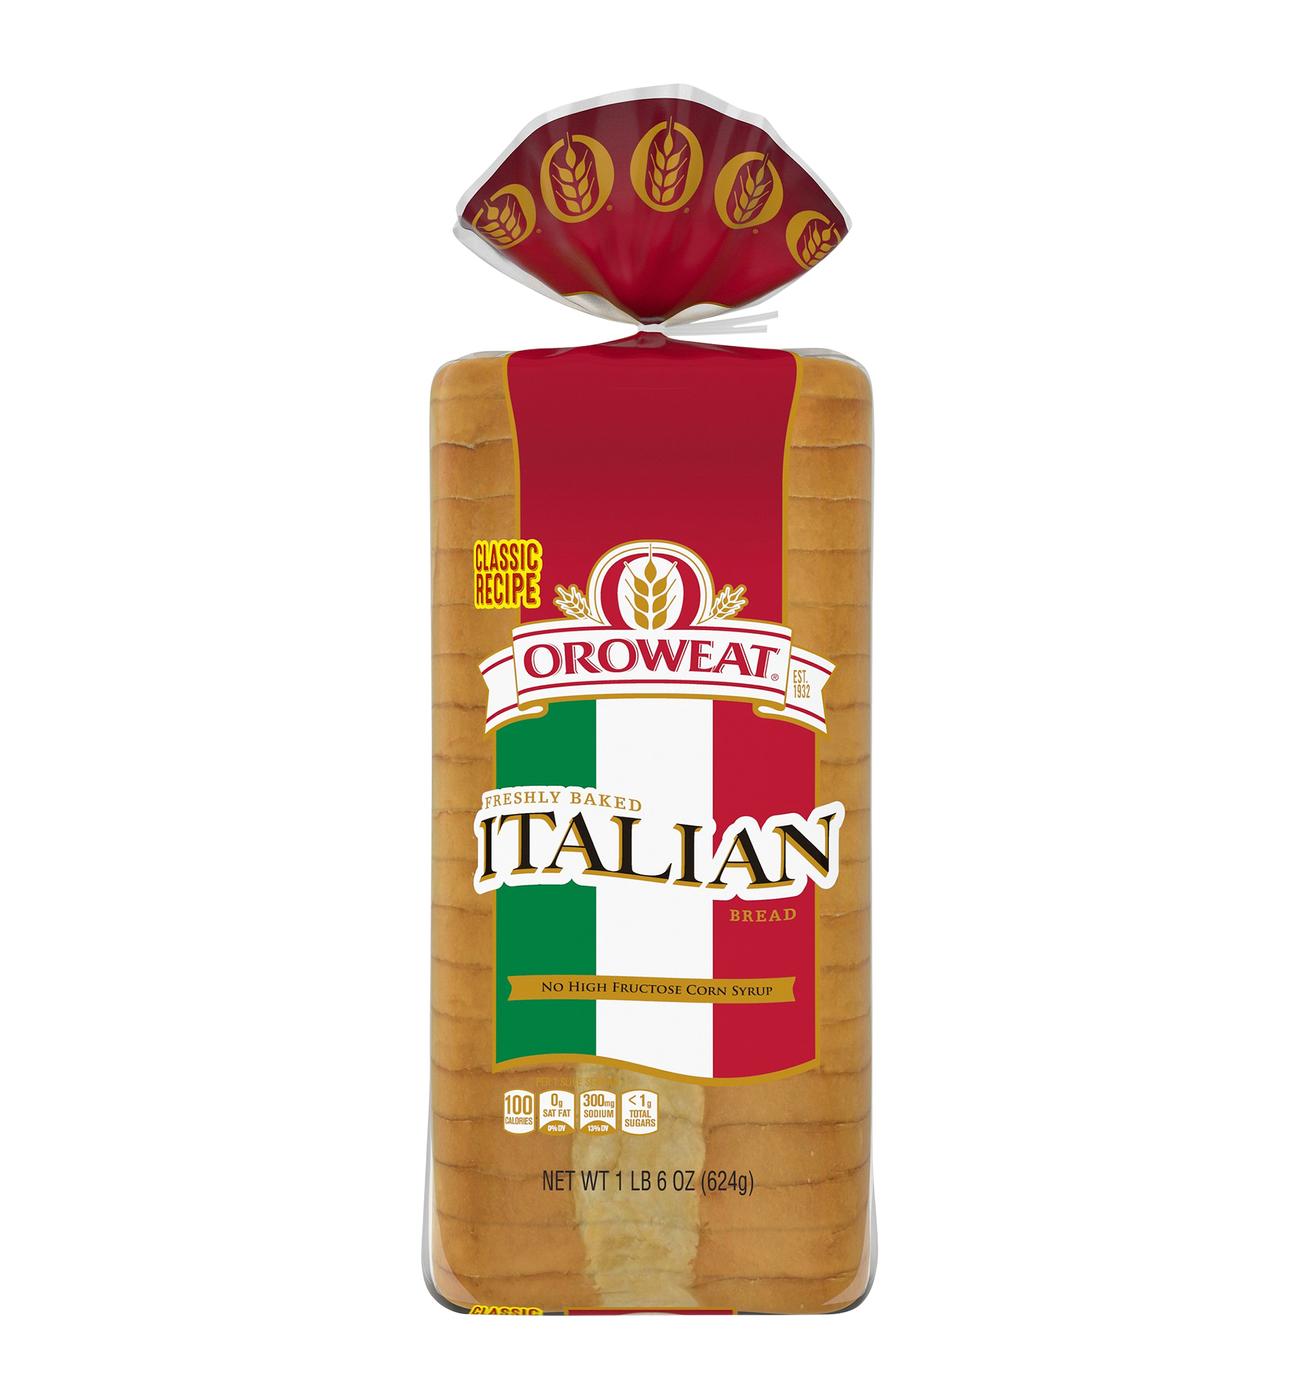 Oroweat Premium Italian Bread; image 1 of 2